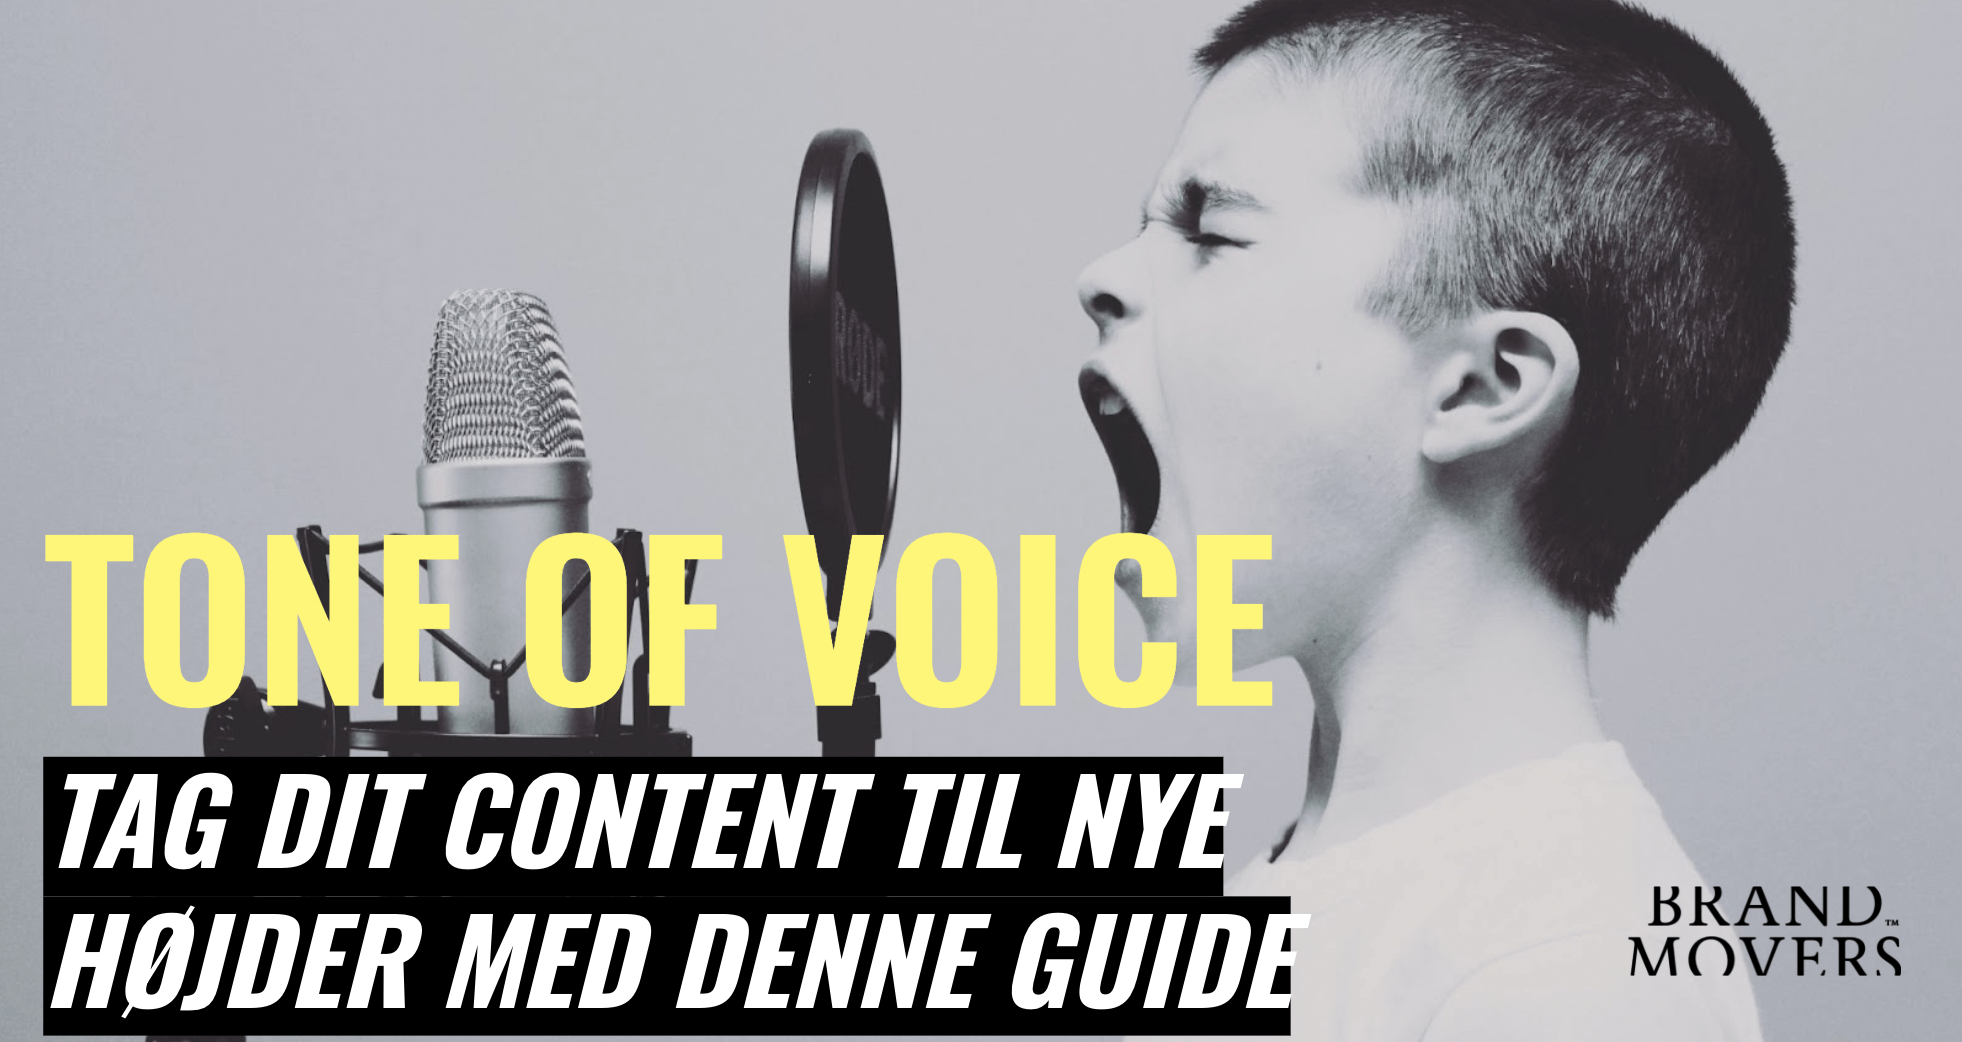 Tone of voice: Tag dit content til nye højder med denne guide